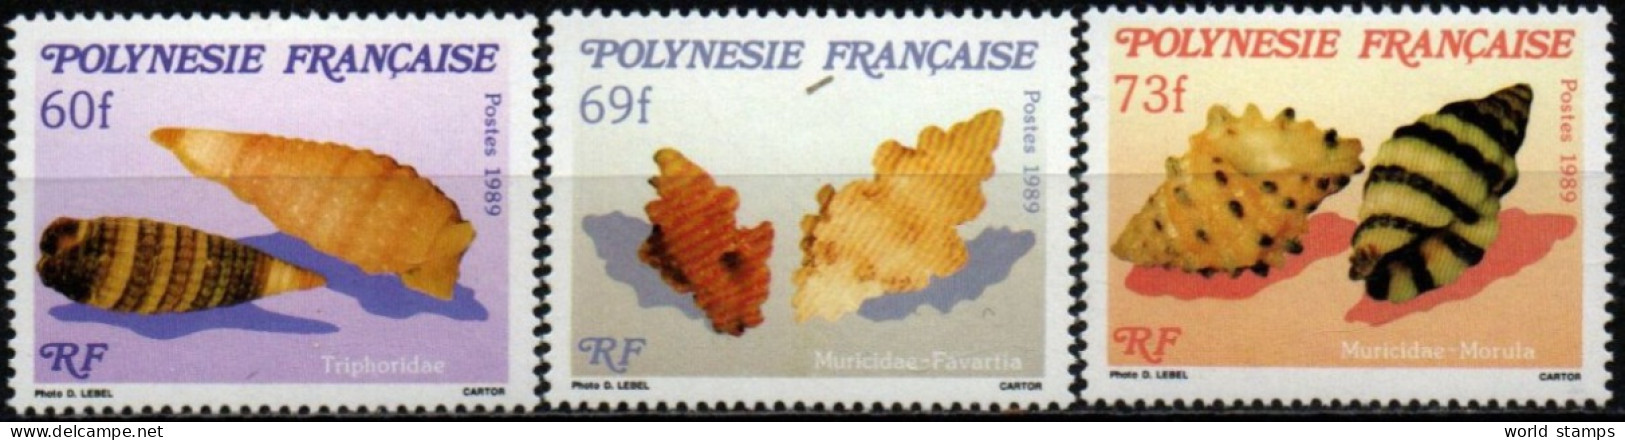 POLINESIE FR. 1989 ** - Nuovi